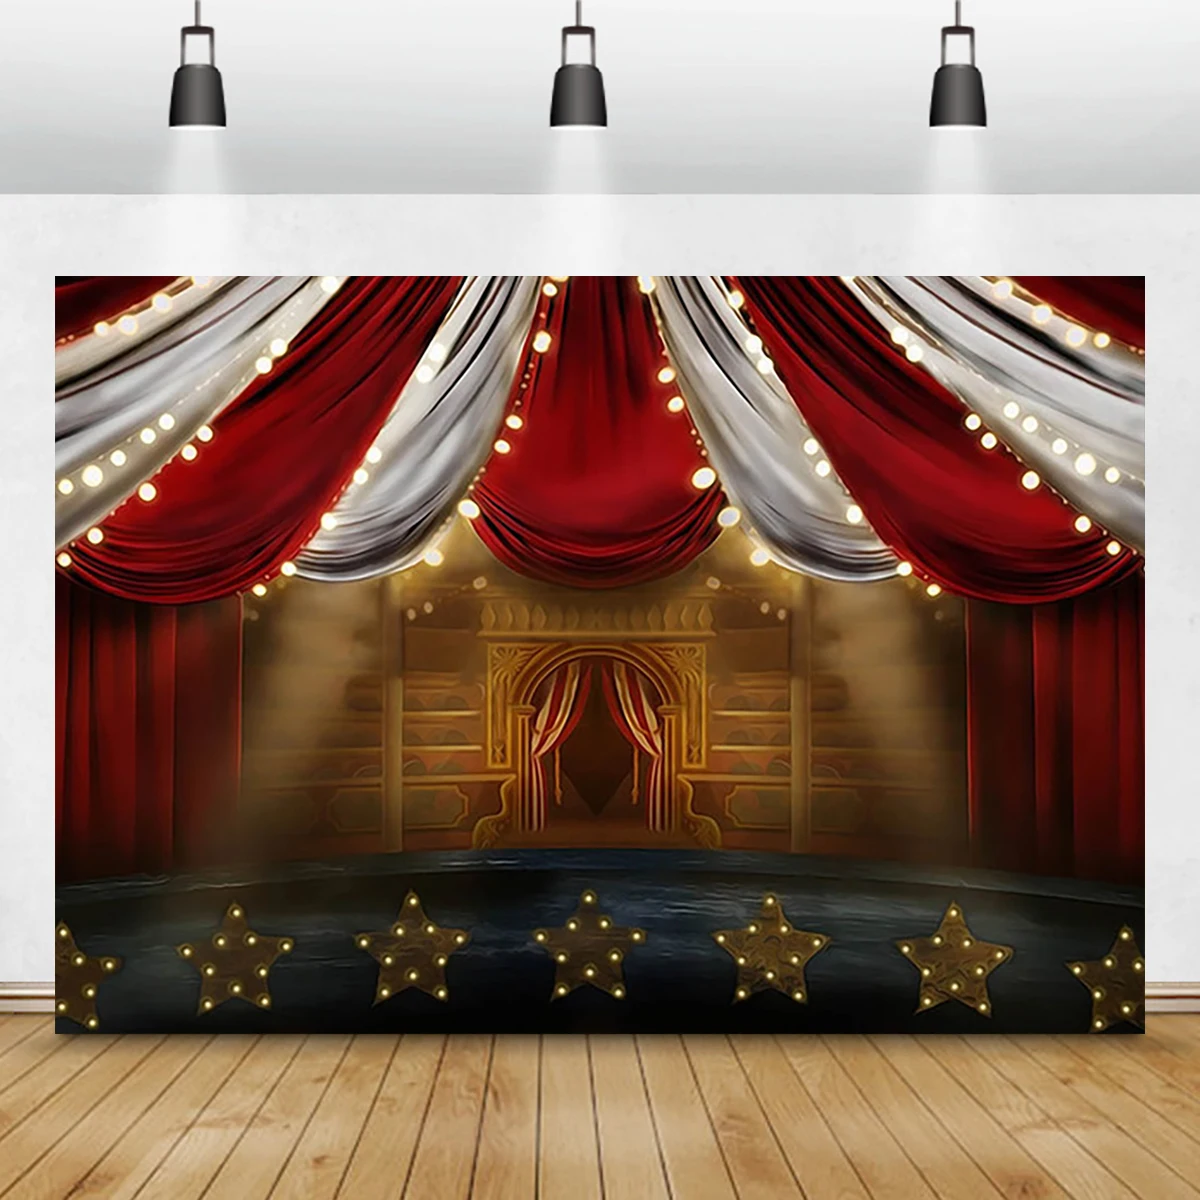 

Ткань 8x6 футов, красный цирк, фотография на день рождения, карнавал, ночная тема, украшение, детский душ, фото фон